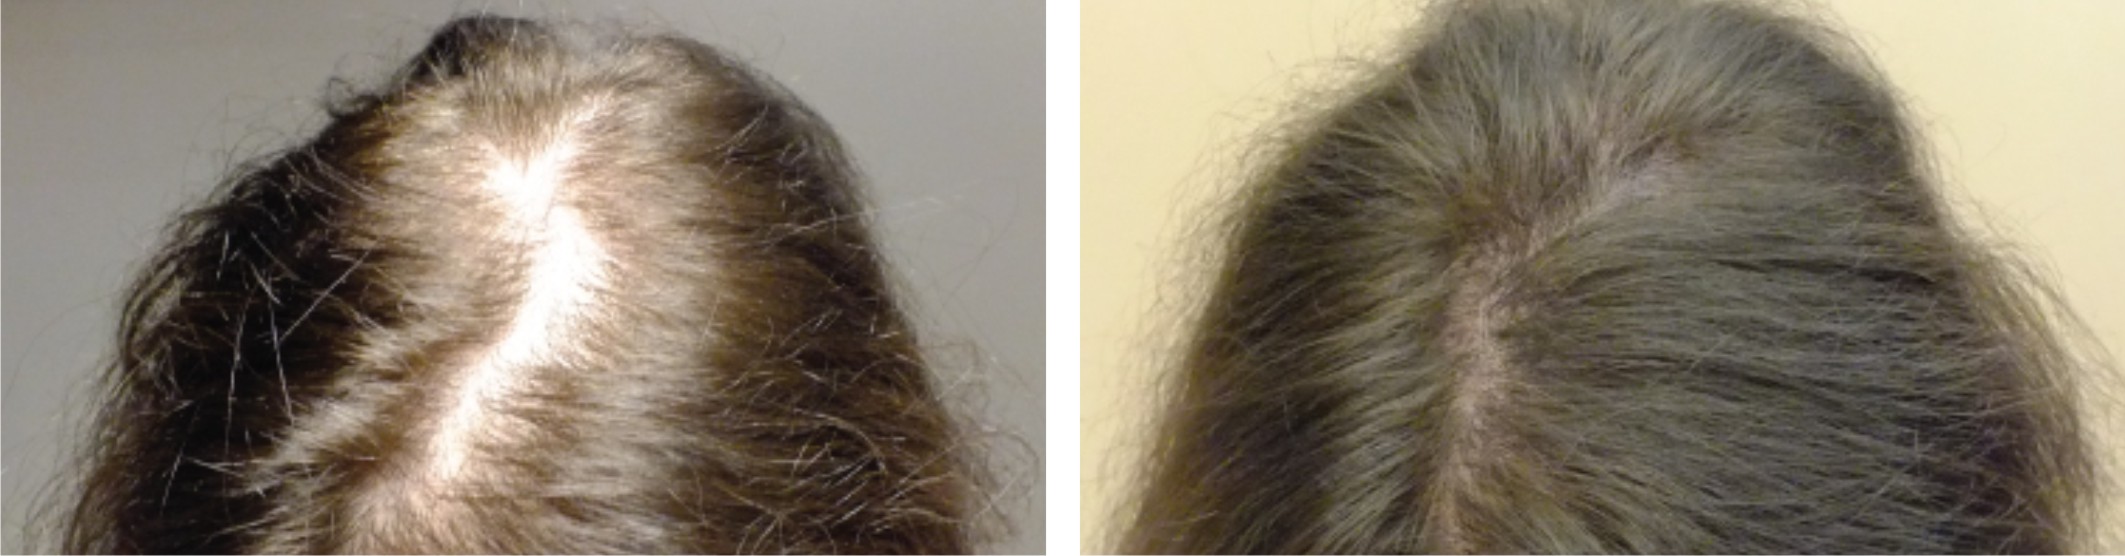 Ковид волосы выпадают что делать. Дарсонваль для волос результат. Волосы до после выпадения волос. Дарсонваль для волос до и после.